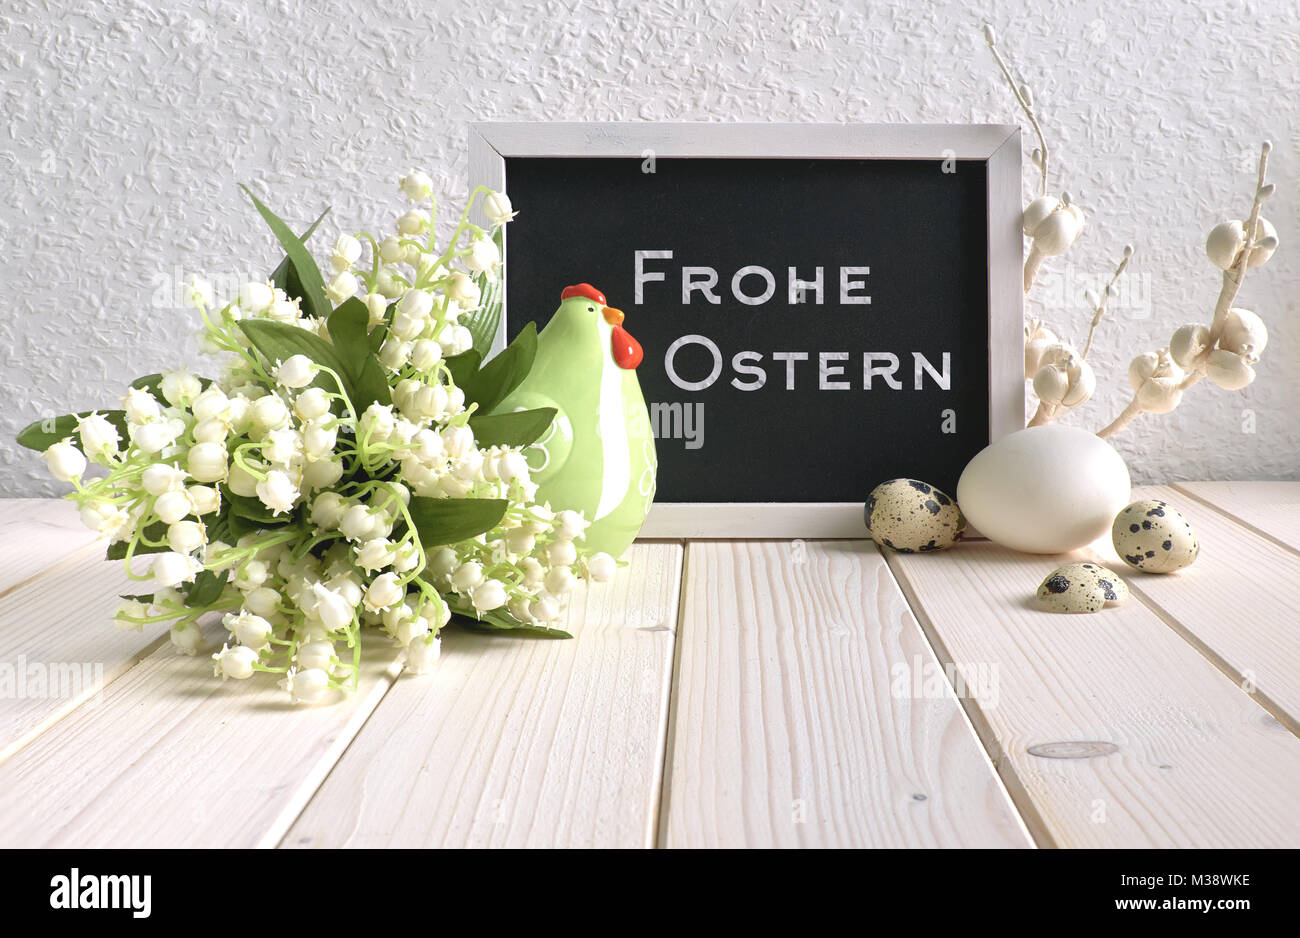 Composizione di pasqua con blackboard decorato con ceramiche hen, uova e e il giglio della valle dei fiori, la didascalia "Frohe Ostern" significa "Felice Pasqua' in Foto Stock